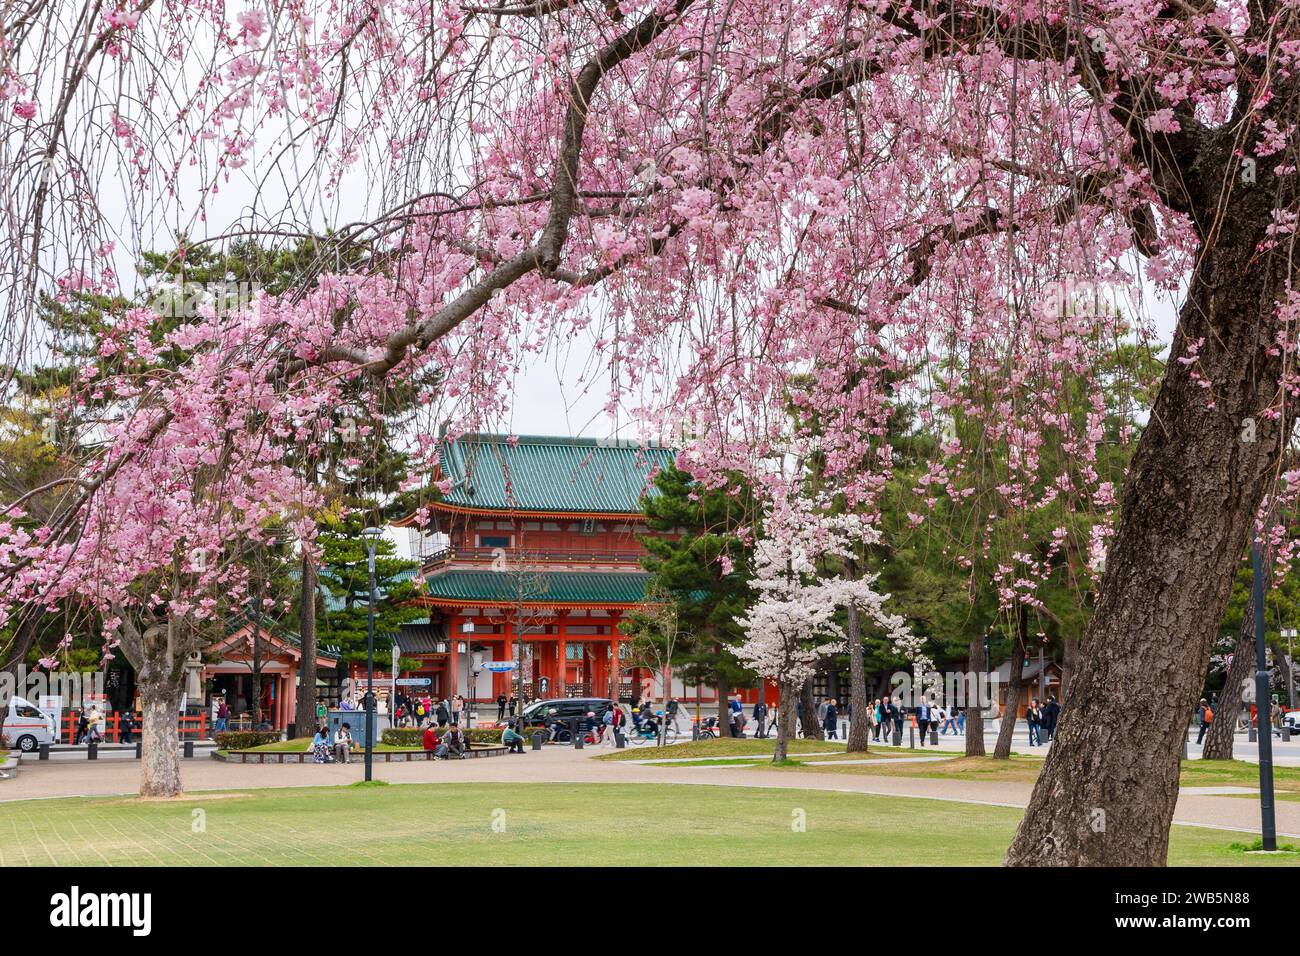 Main gate of Heian-jingu Shrine and cherry blossom. Kyoto, Japan Stock Photo